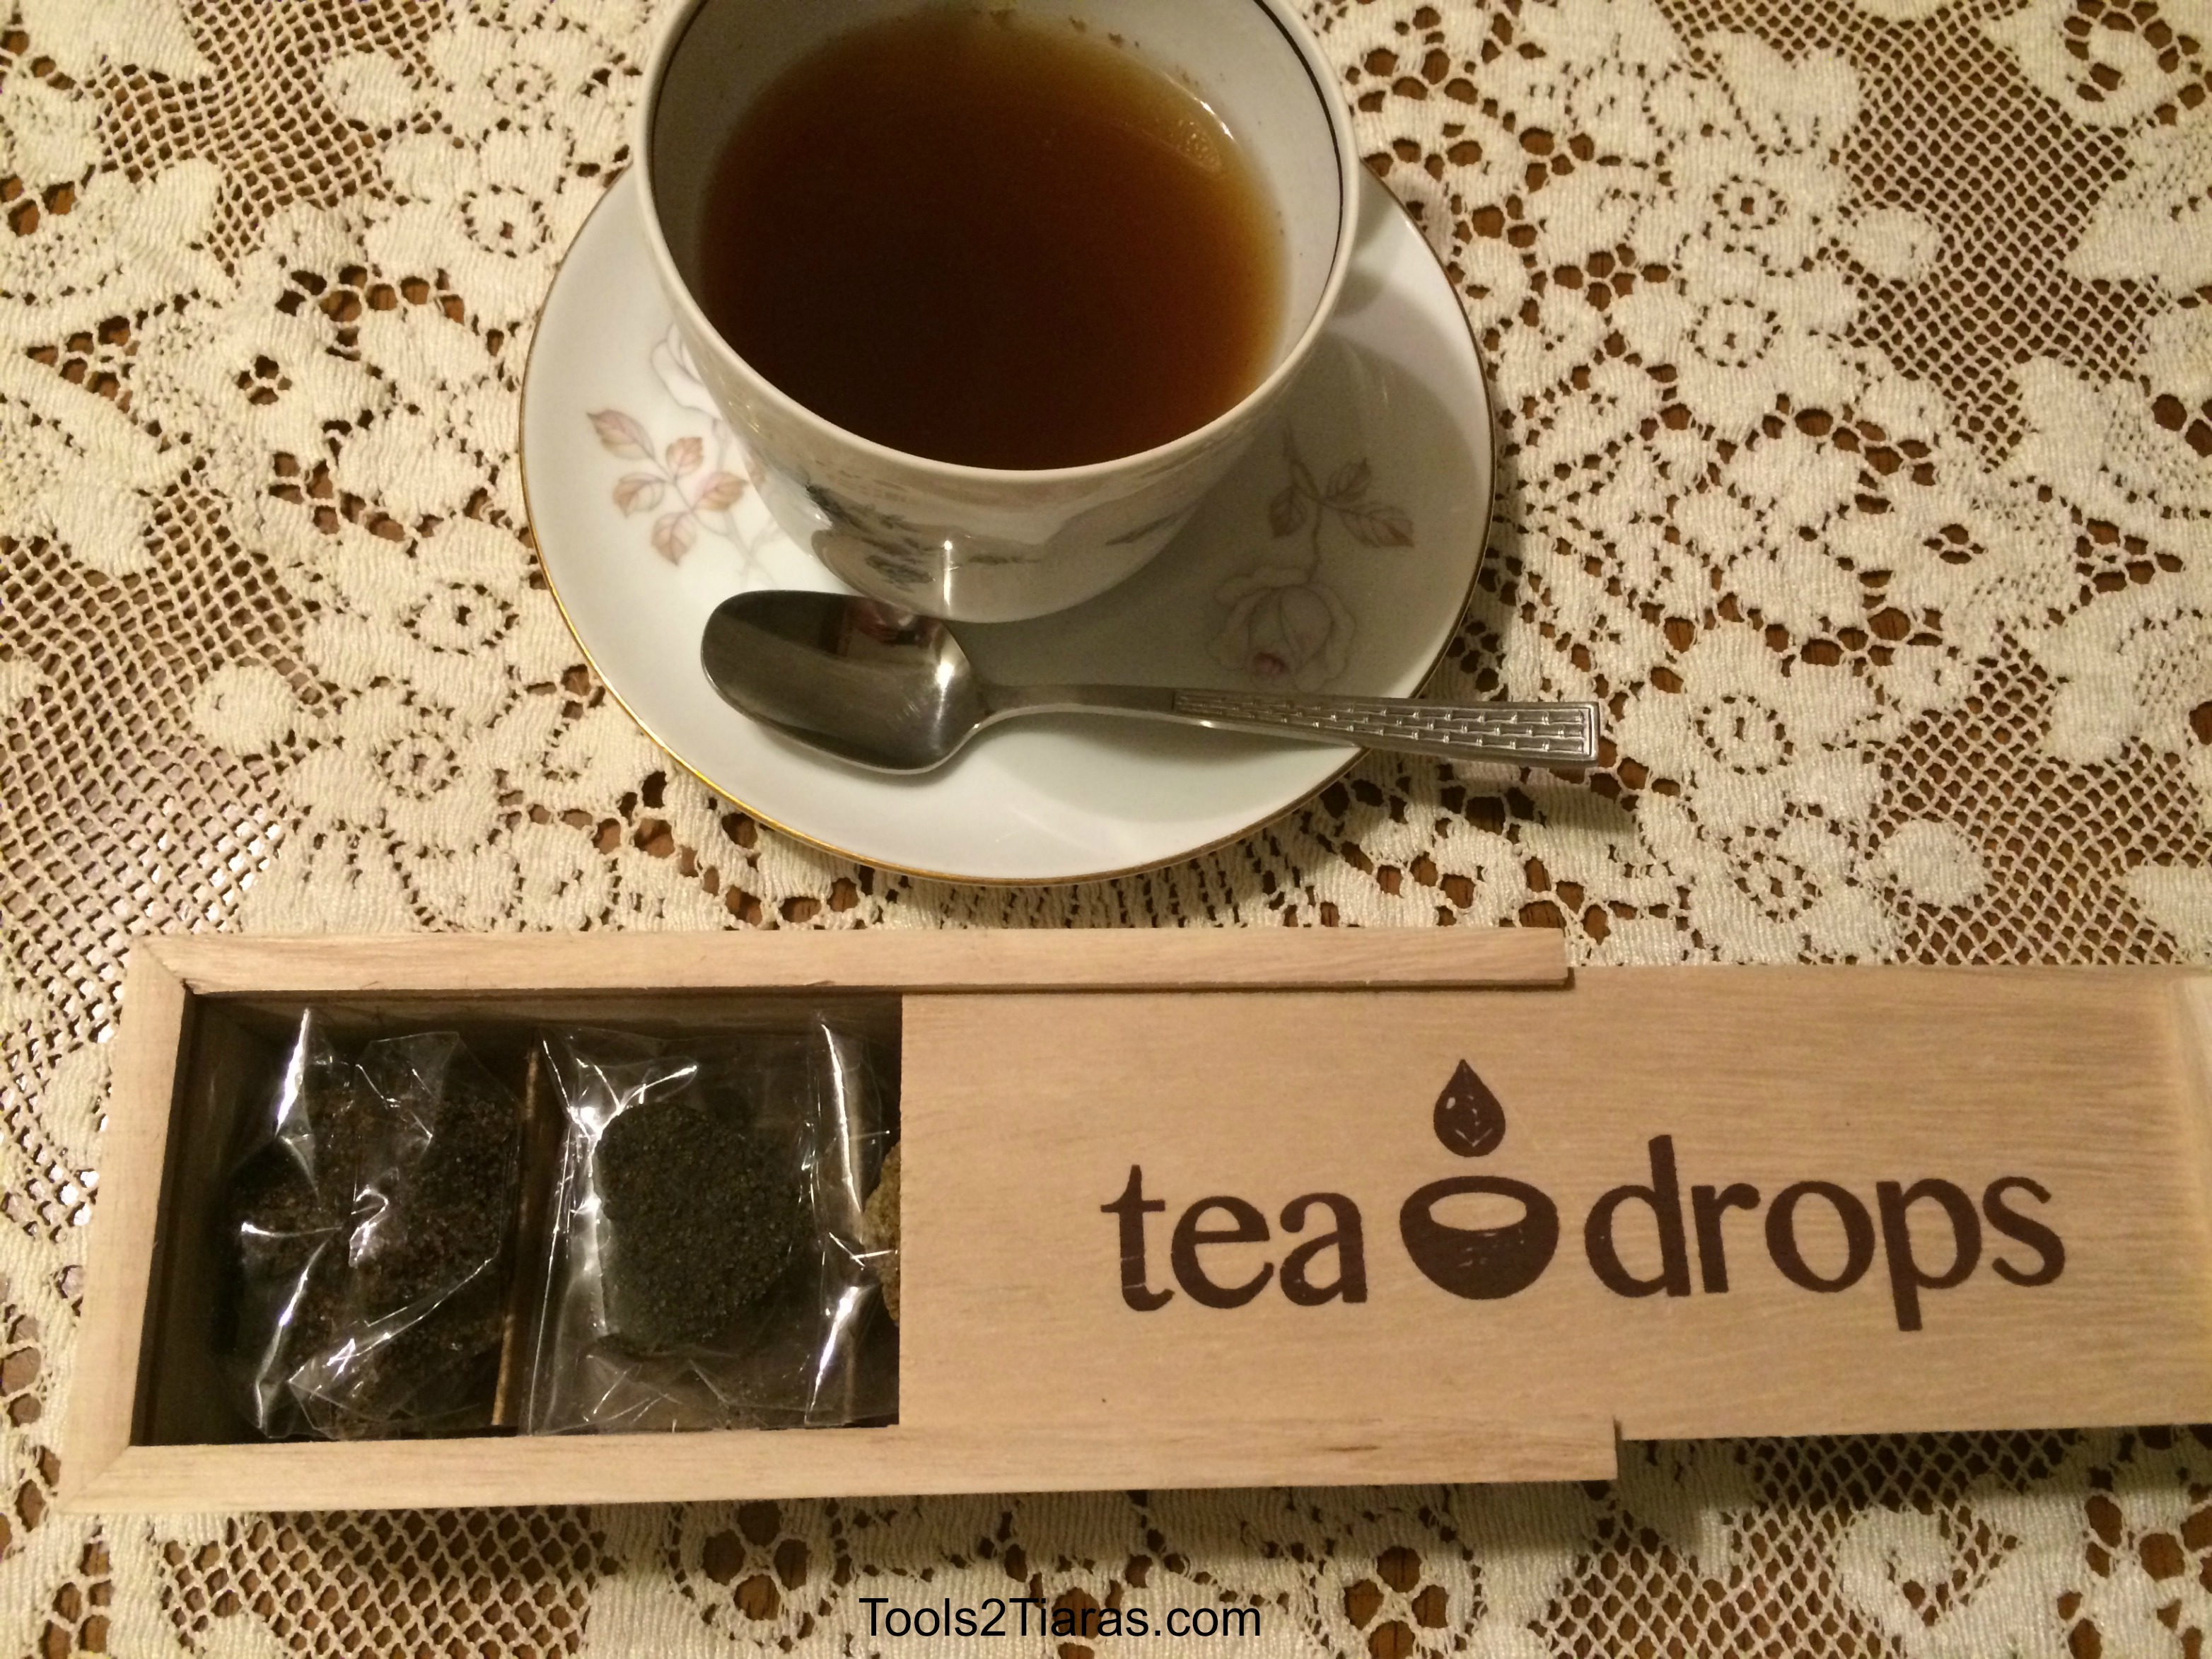 Tea drops